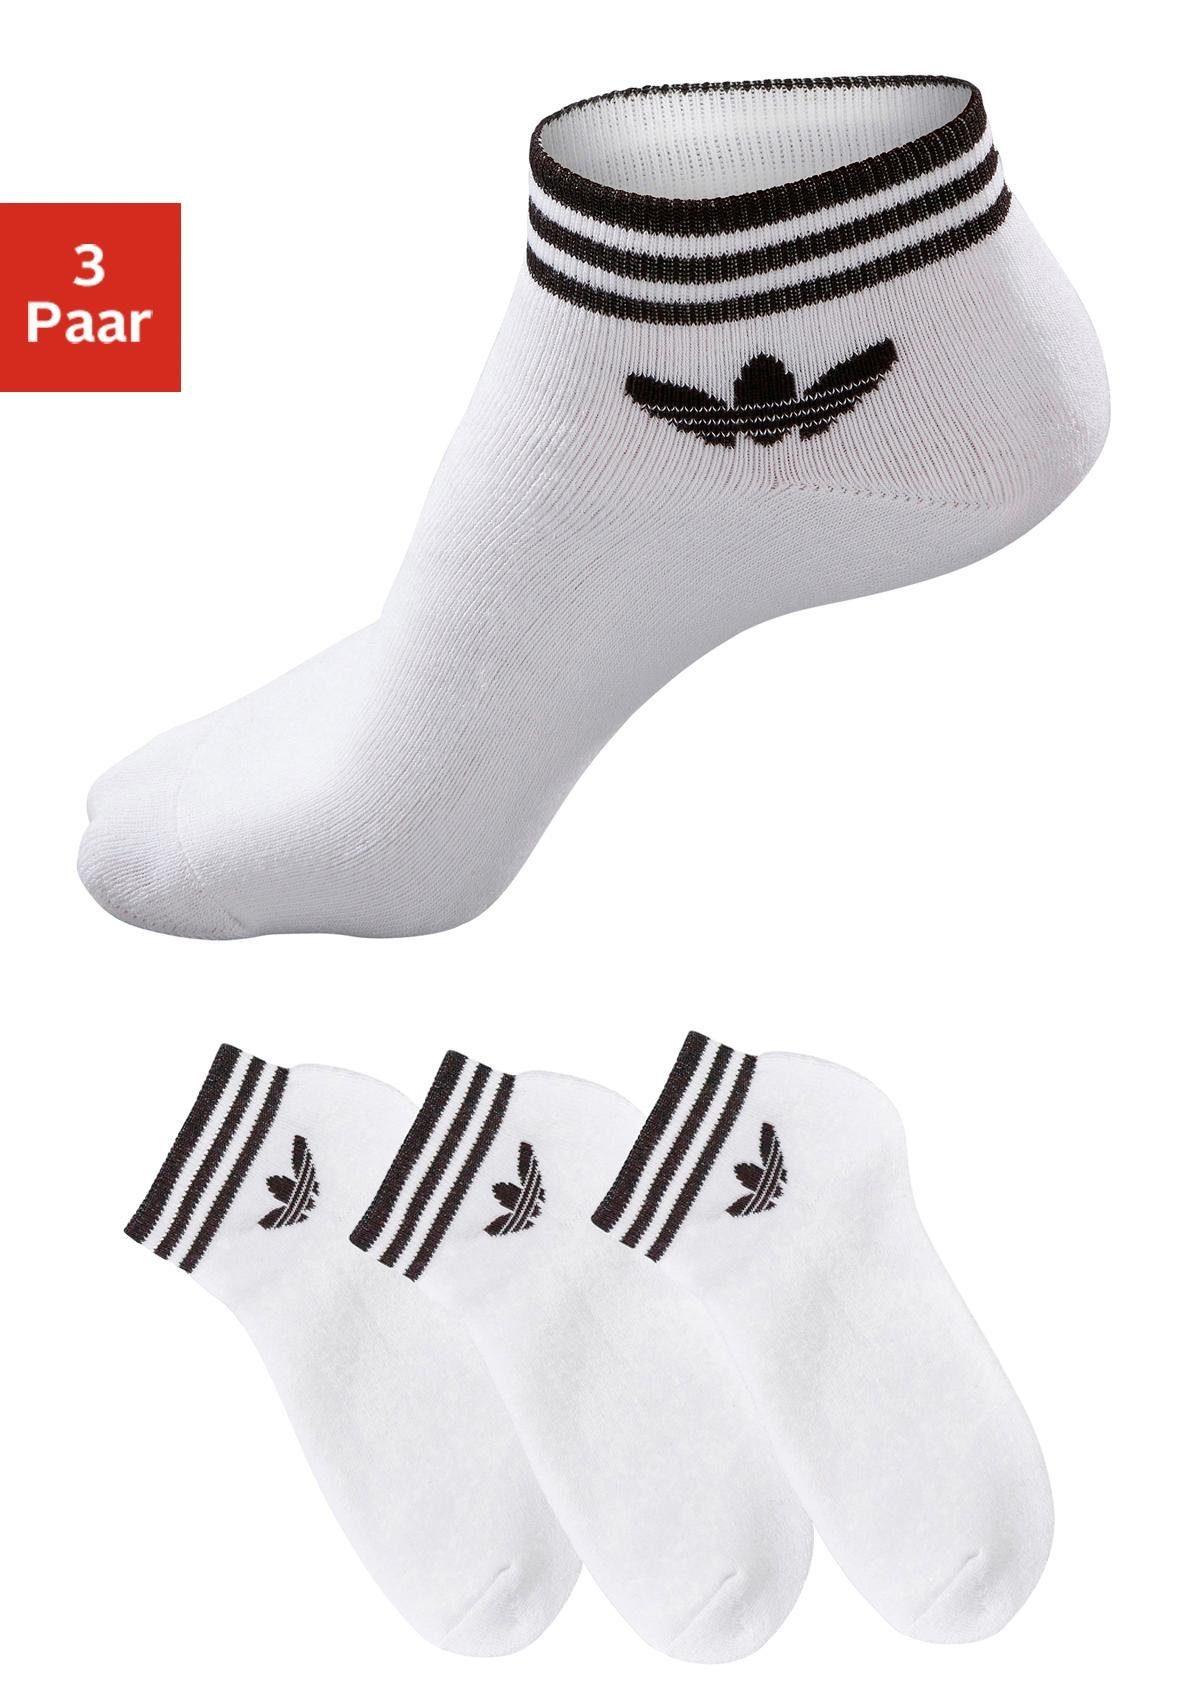 Gebakjes optellen prototype adidas Originals Socken TREFOIL ANKLE, 3 PAAR (3-Paar) mit Frottee